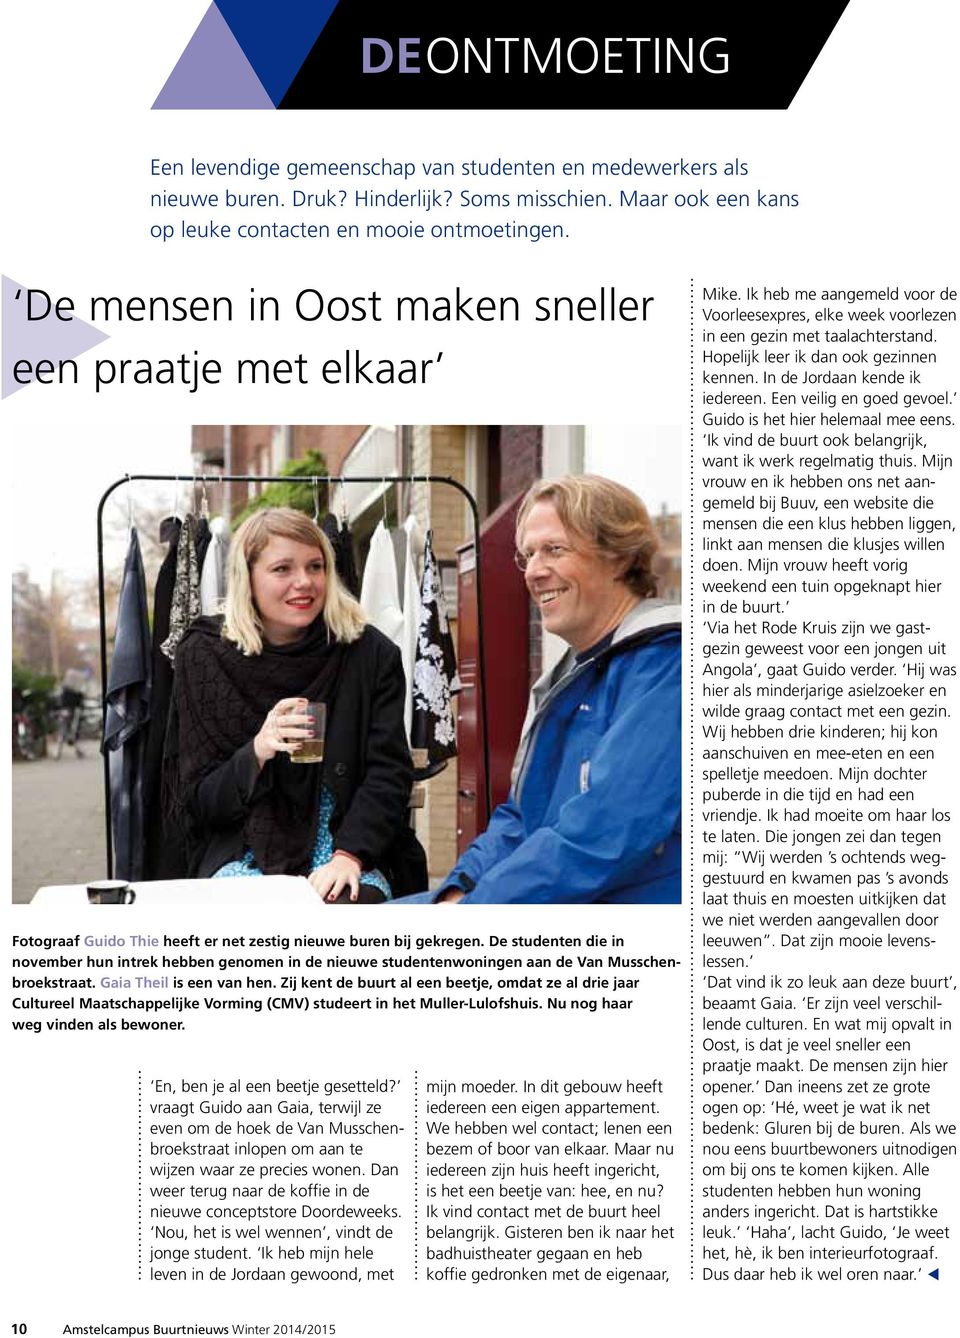 De studenten die in november hun intrek hebben genomen in de nieuwe studentenwoningen aan de Van Musschenbroekstraat. Gaia Theil is een van hen.